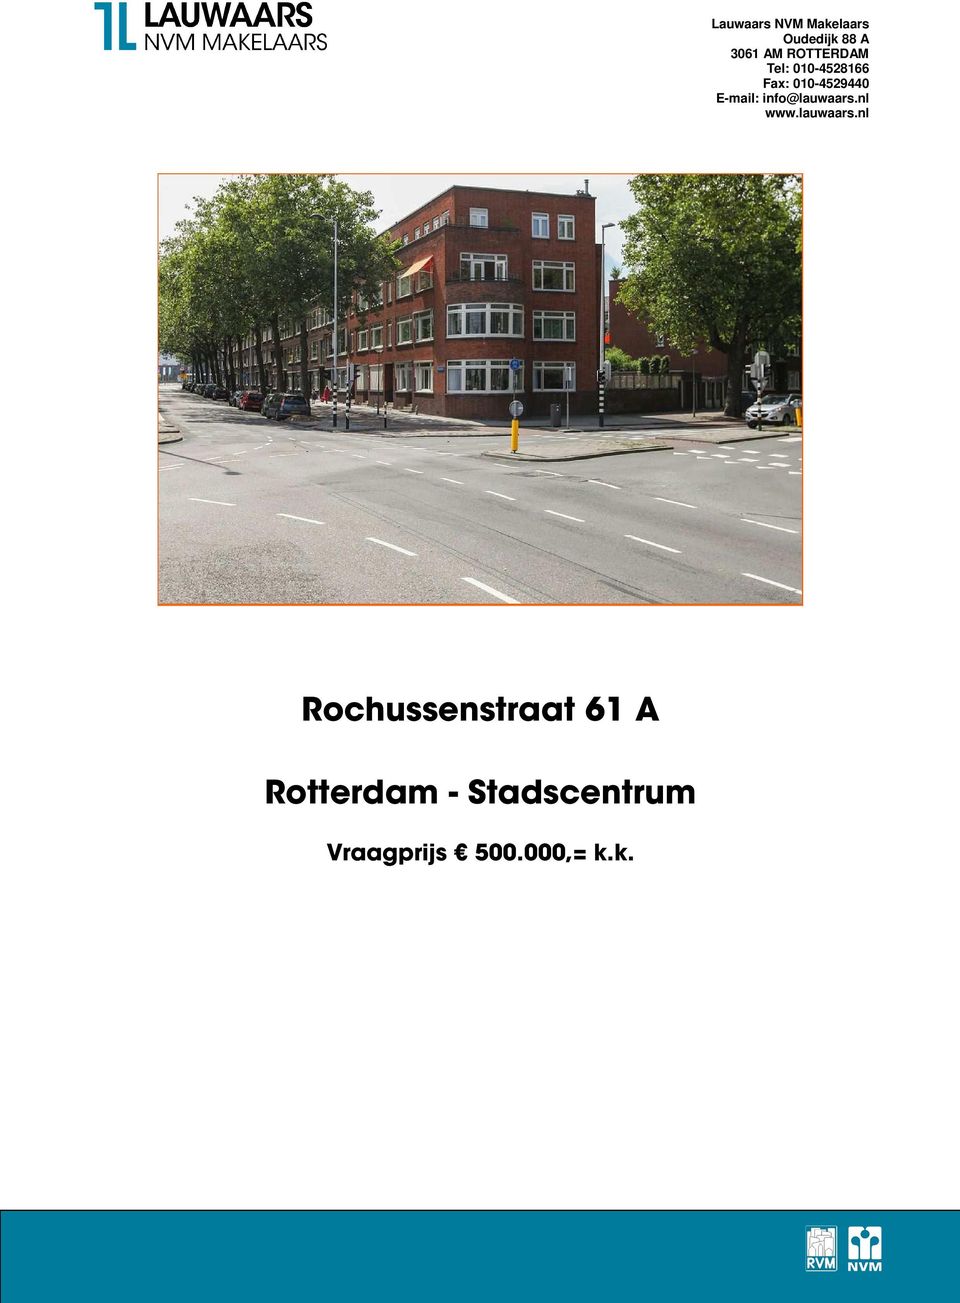 Rotterdam -